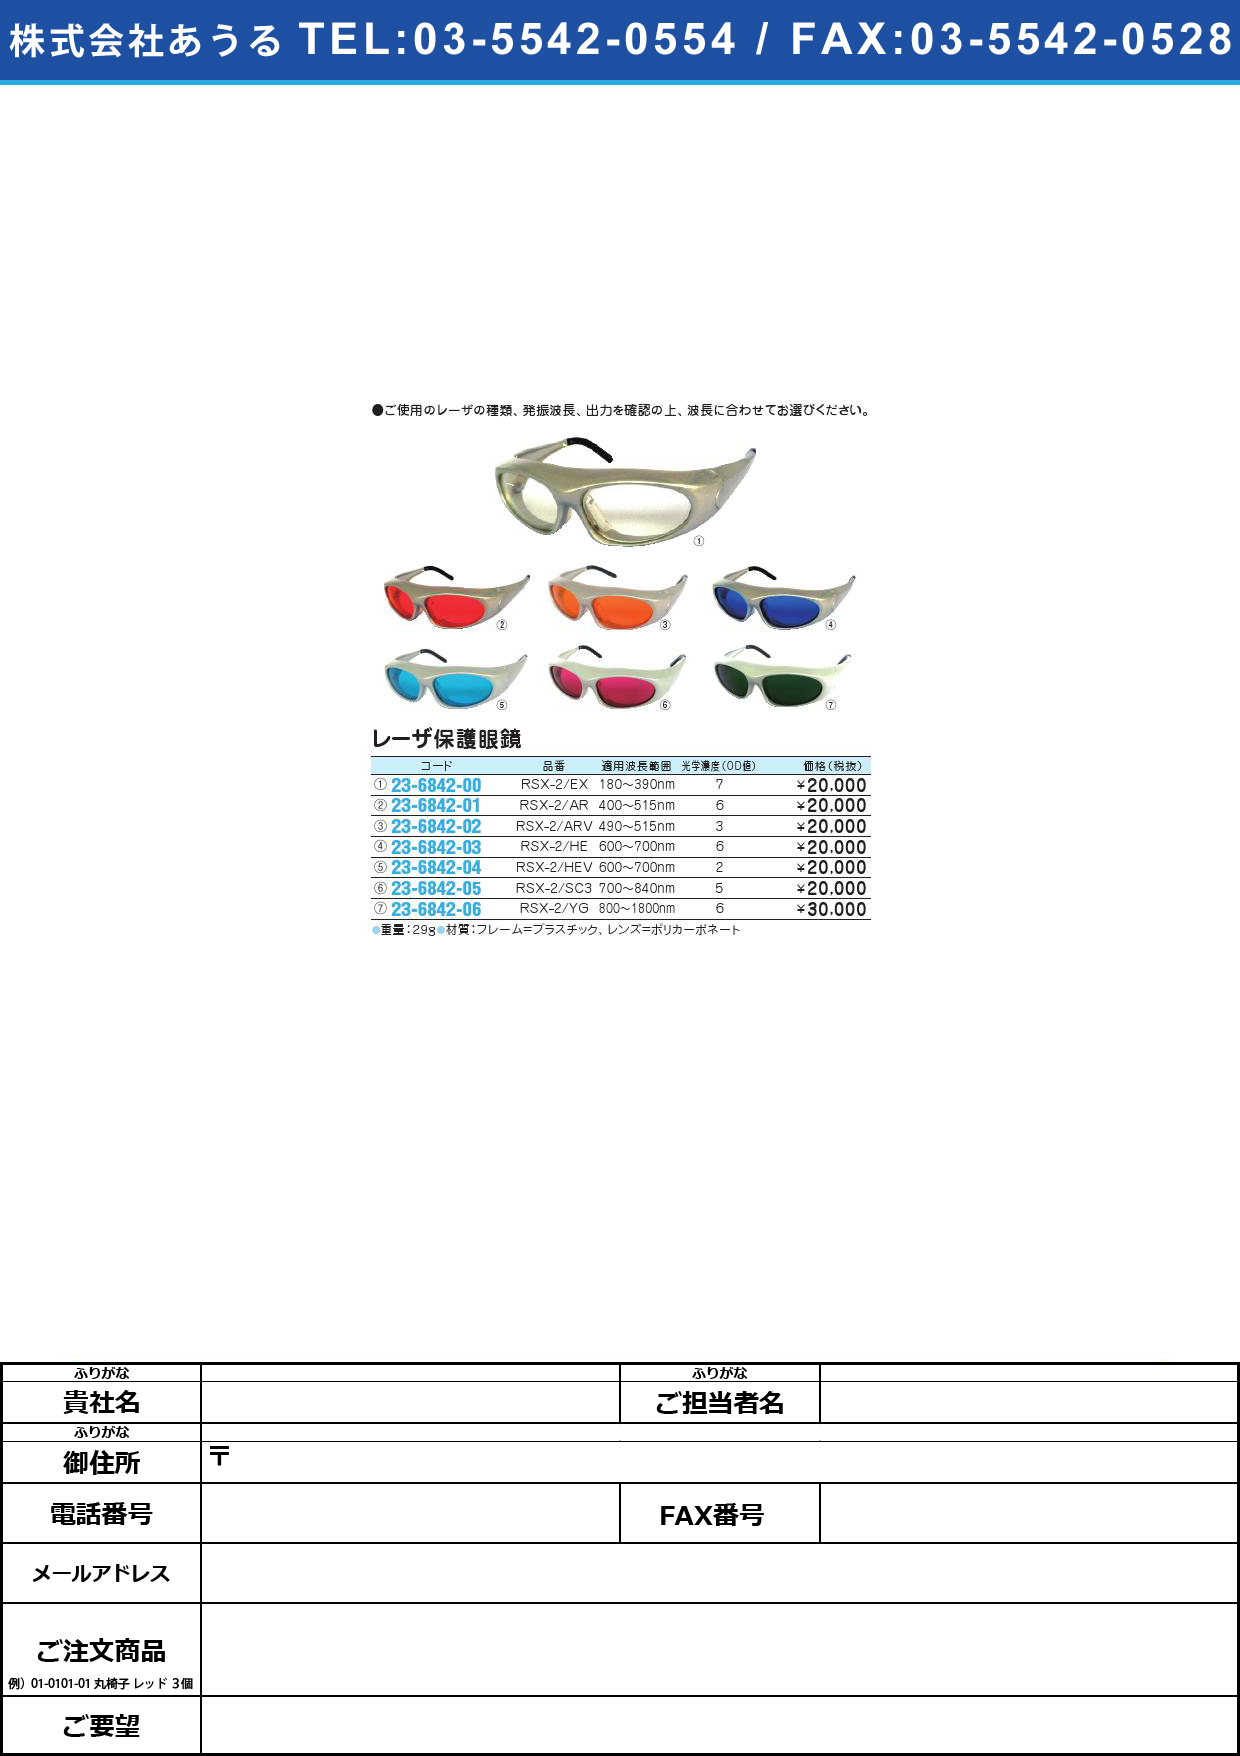 (23-6842-06)レーザ保護眼鏡 RSX-2/YGﾚｰｻﾞﾎｺﾞﾒｶﾞﾈ(23-6842-06)【1個単位】【2013年カタログ商品】